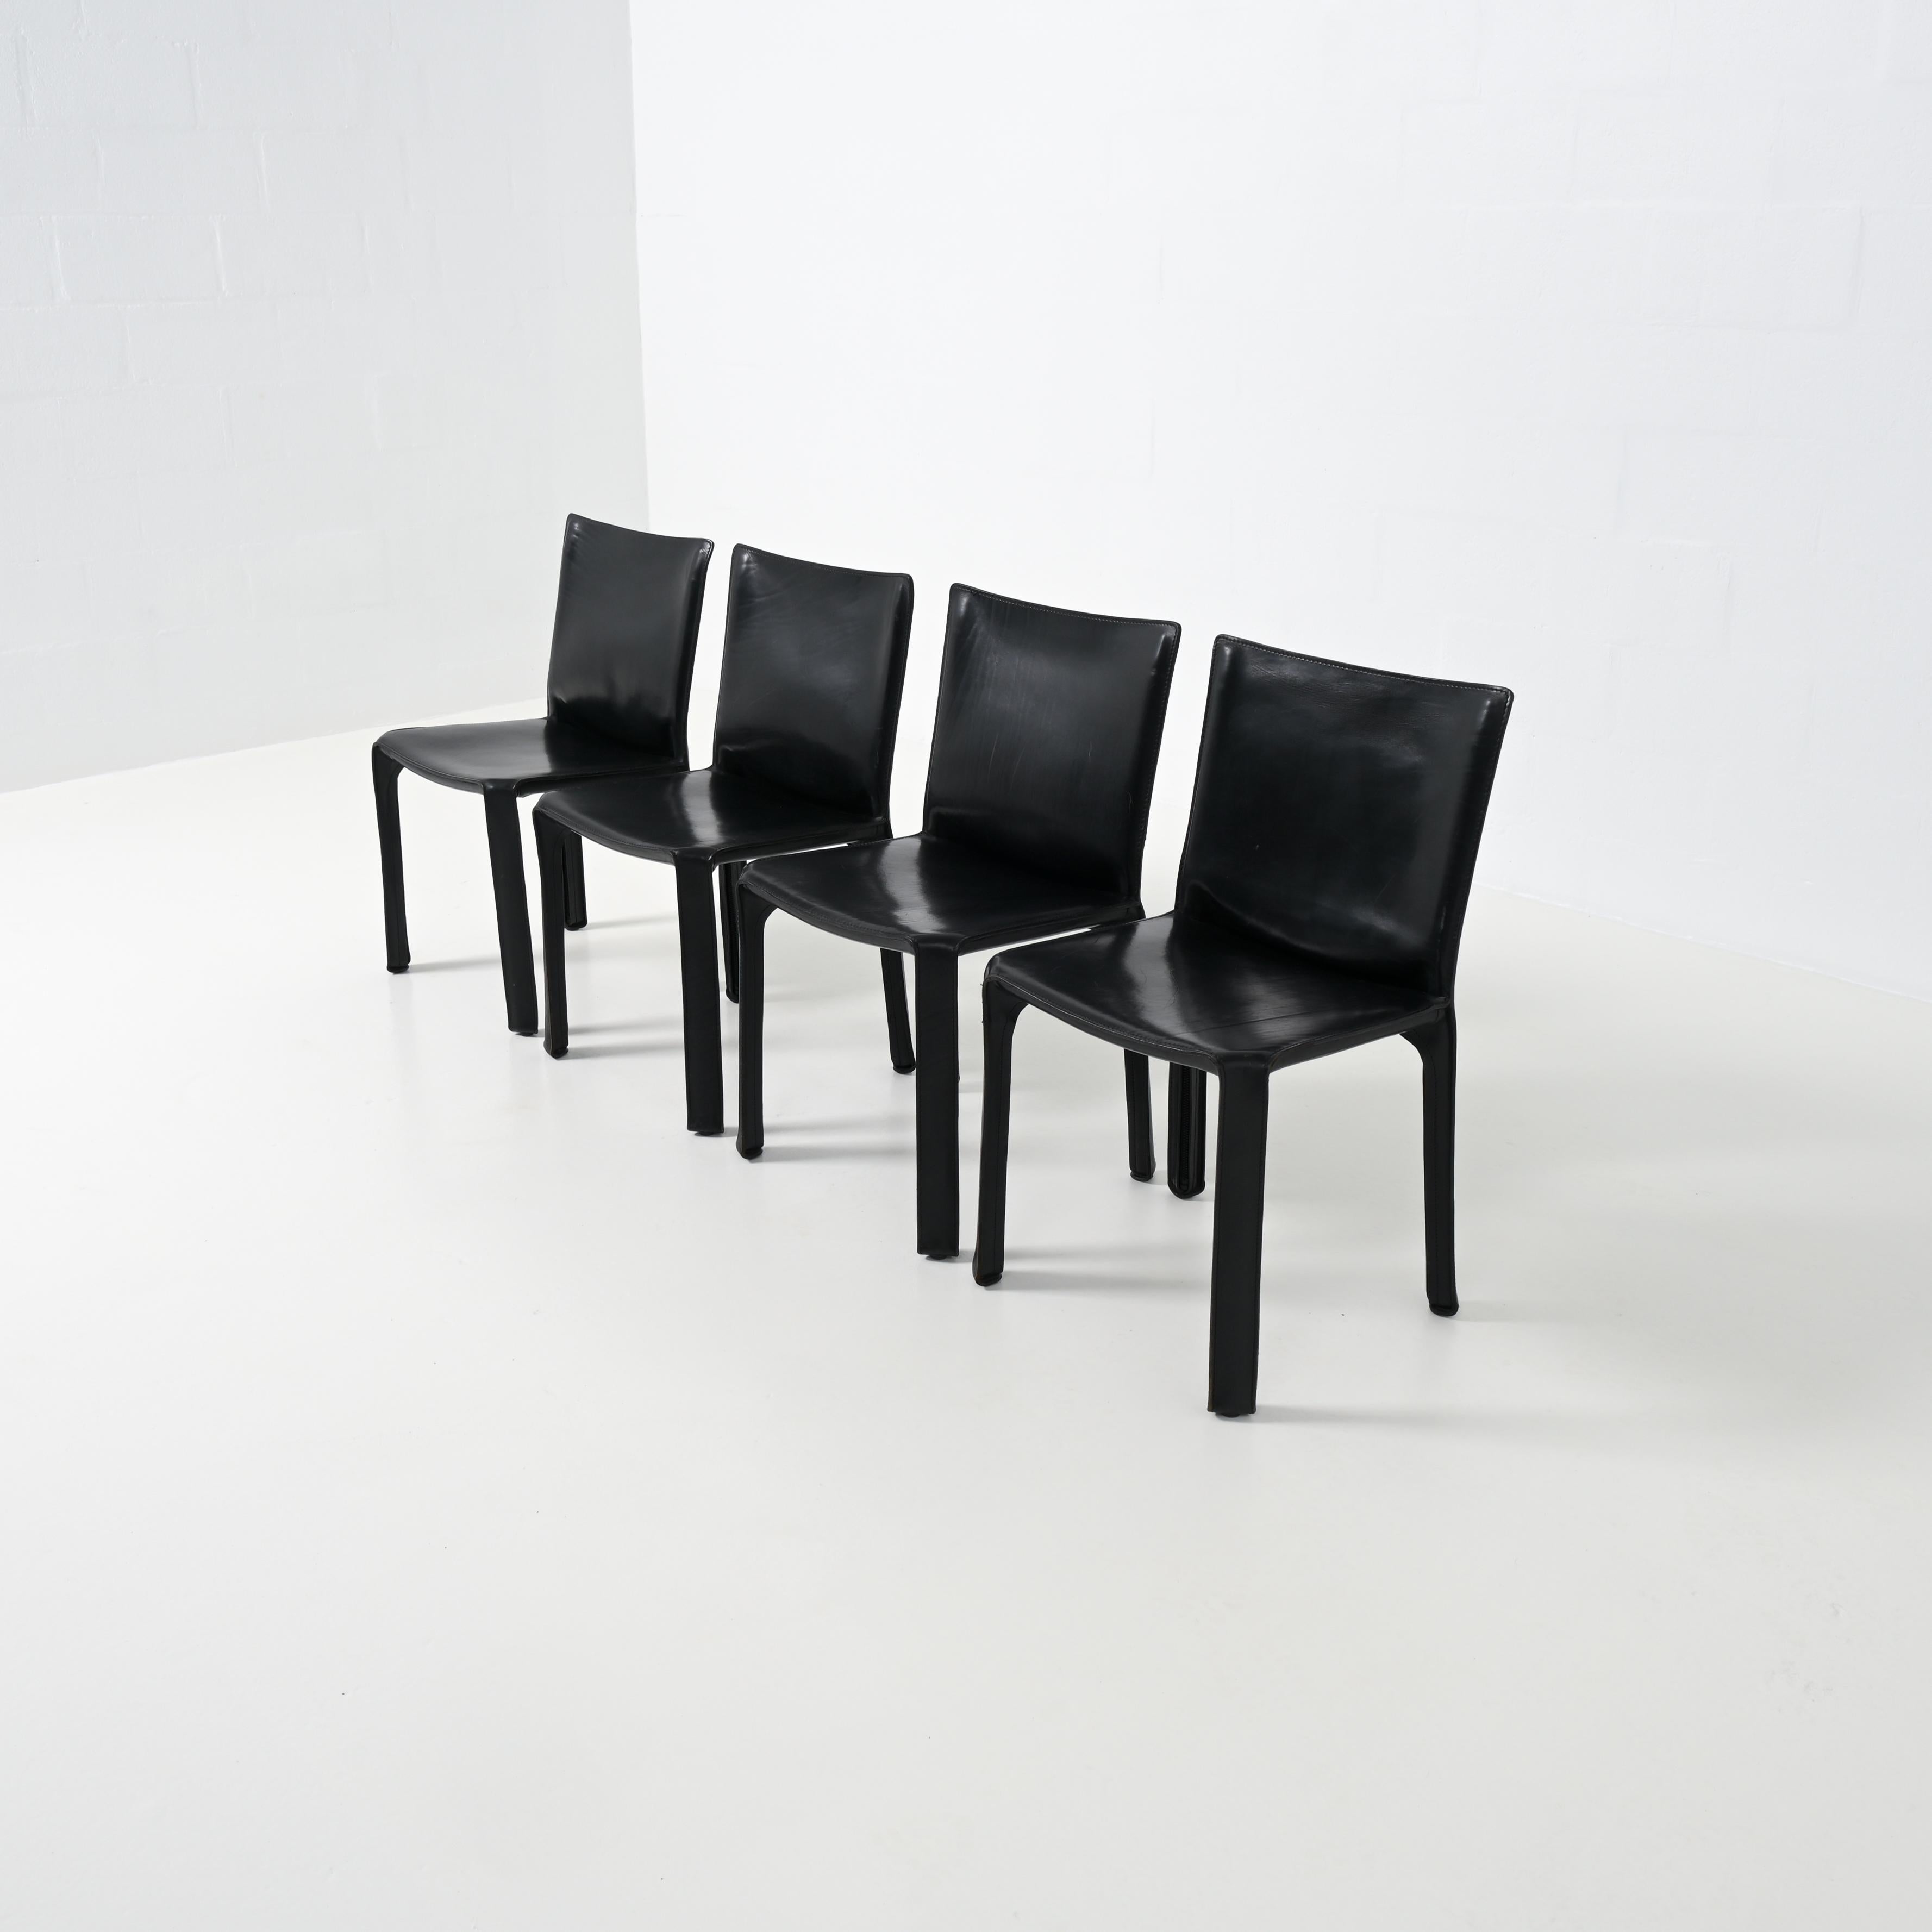 La chaise CAB a été conçue par Mario Bellini en 1977 pour Cassina, en Italie. Mario Bellini (1935) est un designer et architecte italien.

La chaise a un squelette en acier tubulaire et le cuir étiré et cousu est fixé au cadre par quatre fermetures